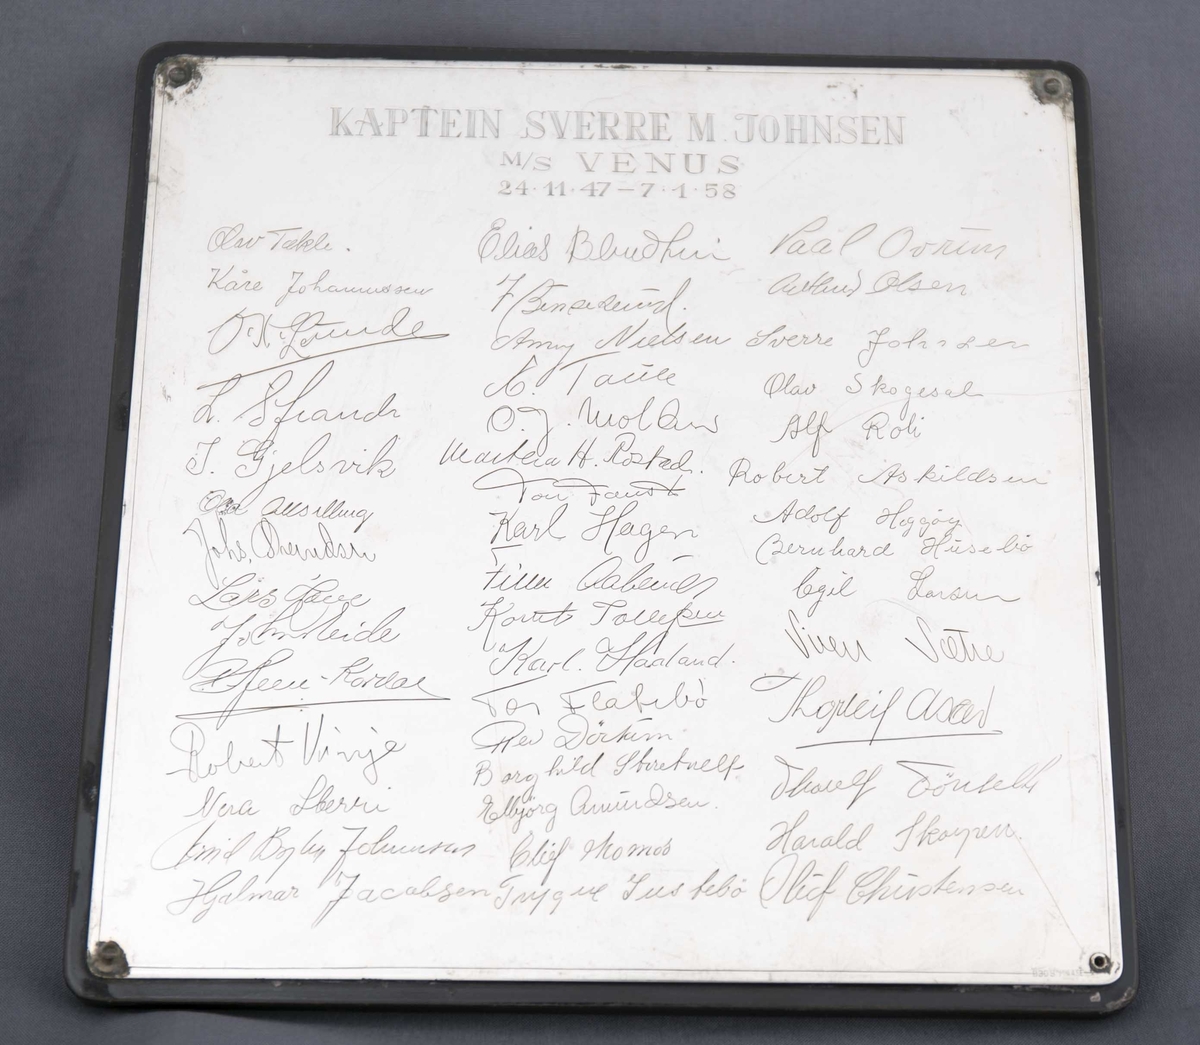 Plakett gitt til kaptein Sverre M. Johnsen på MS VENUS med signatur til mannskapet på skipet, datert 24.11.1947 - 7.1.1958. 
Kvaderatisk treplate påmontert inngravert sølvplate.